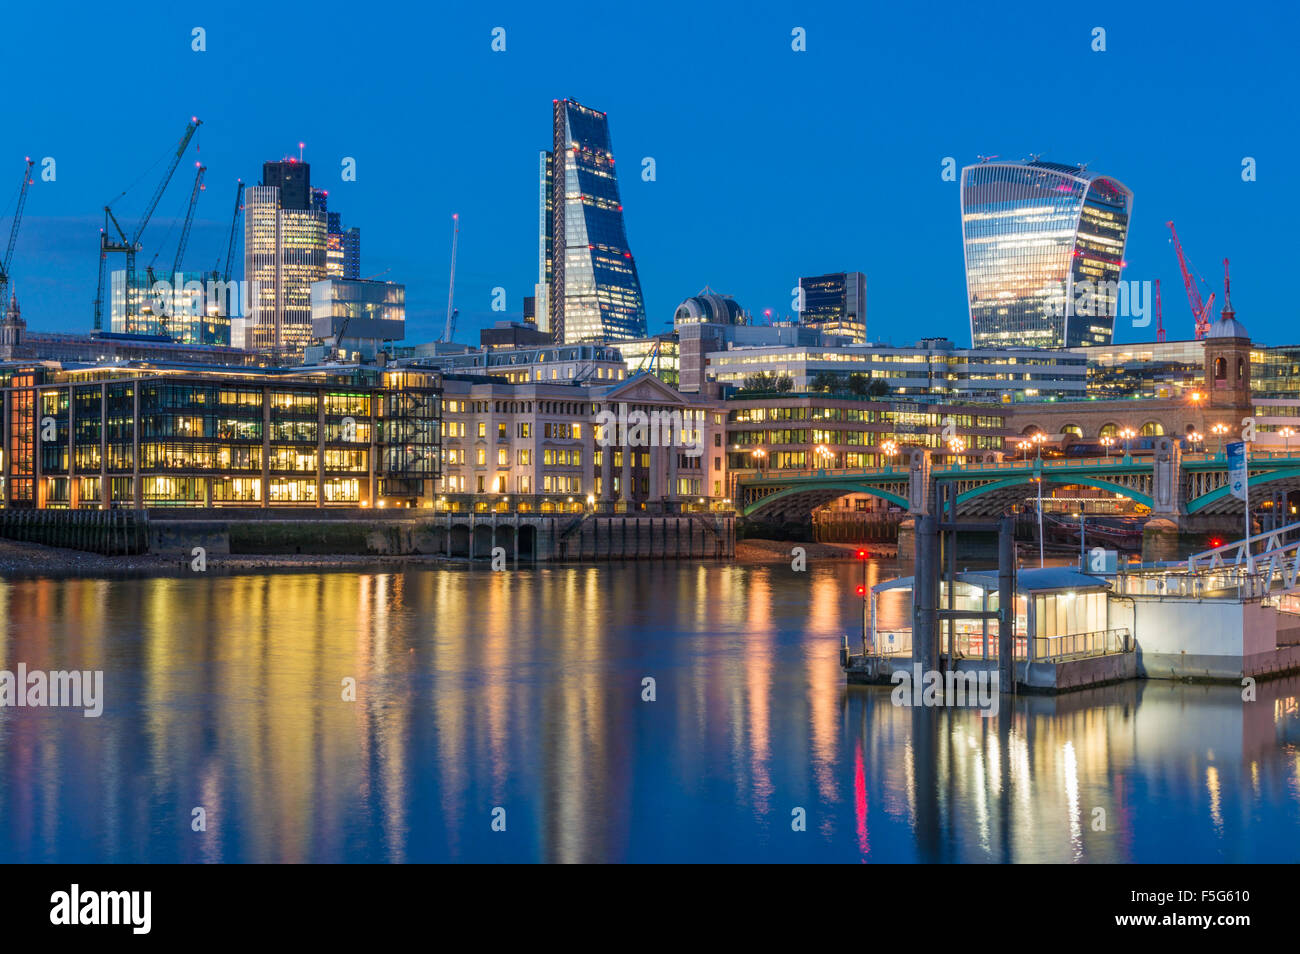 Der Londoner Skyline Finanzviertel Wolkenkratzern bei Sonnenuntergang River Thames Stadt London UK GB EU Europas Stockfoto